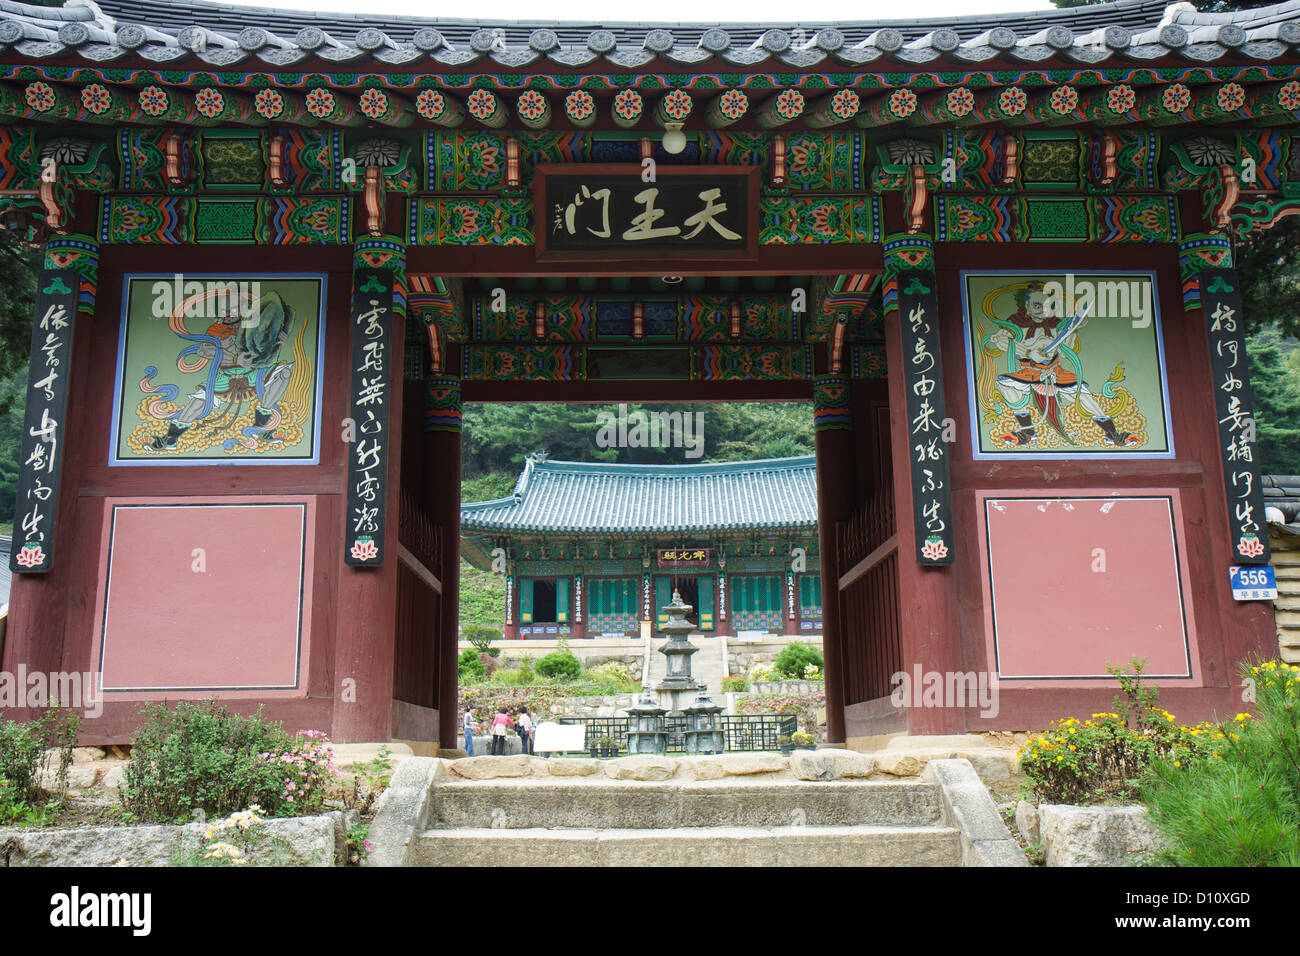 Samhwa (Samhwasa-sa) entrée, Mureung Valley, près de la Corée du Sud, Donghae Banque D'Images